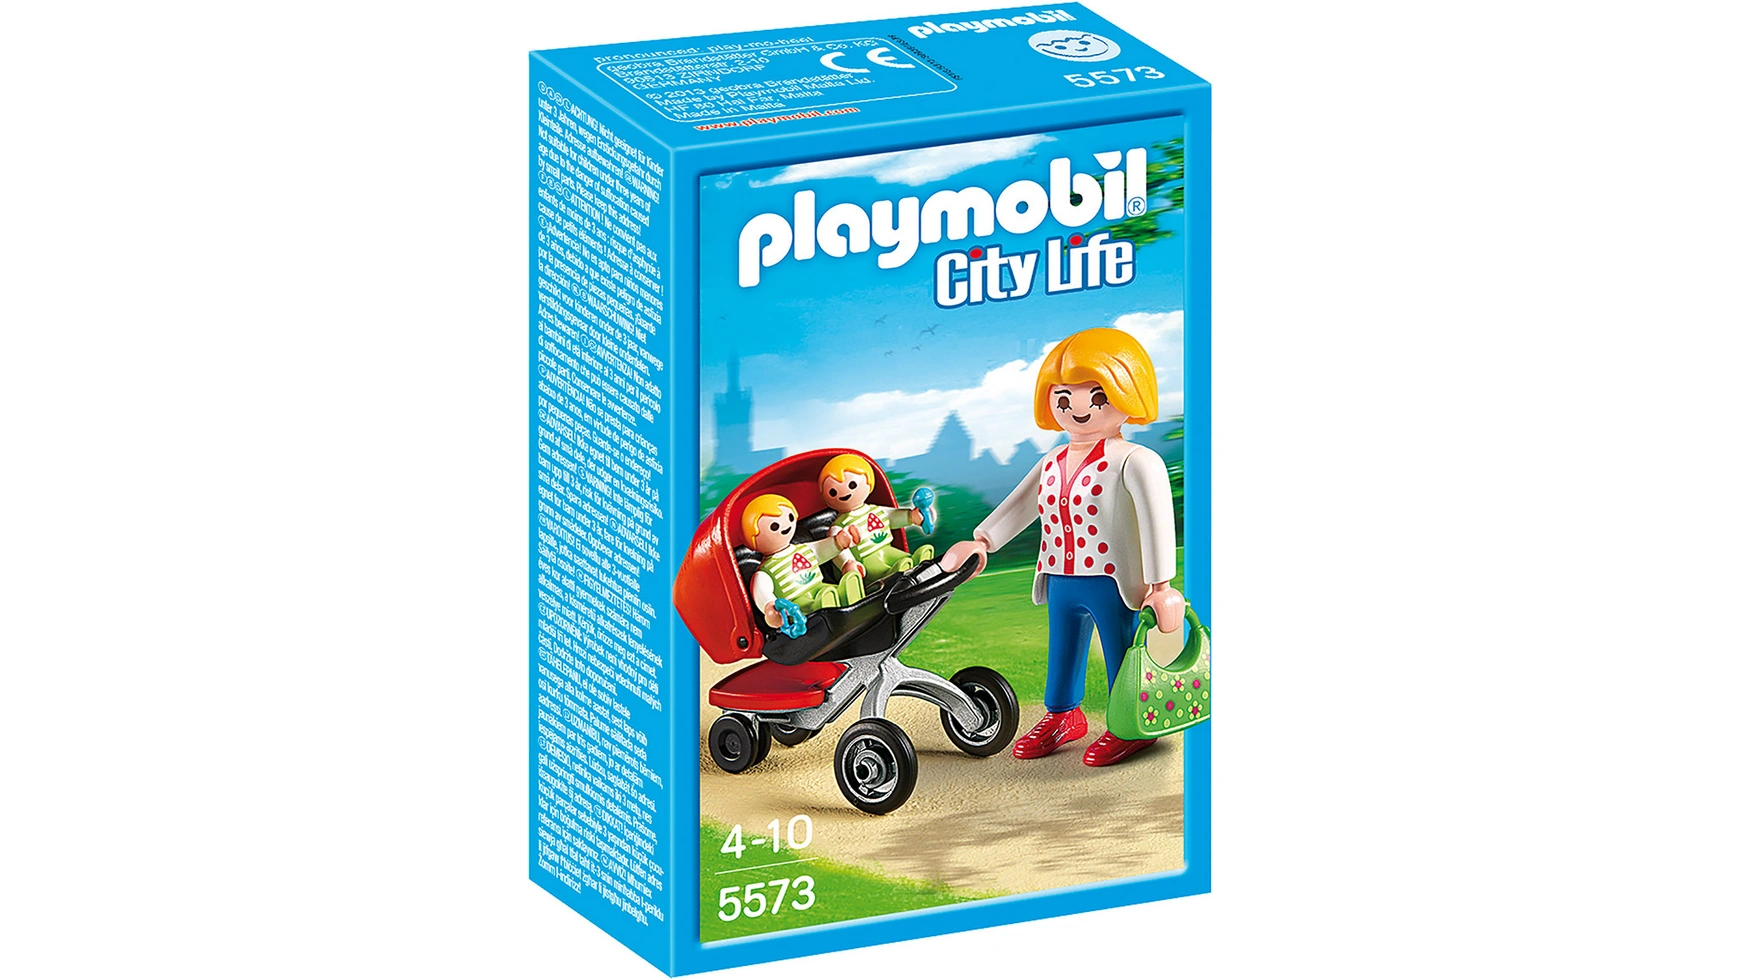 City life в детском саду: коляска для близнецов Playmobil коляска для кукол близнецов duo 39154aa